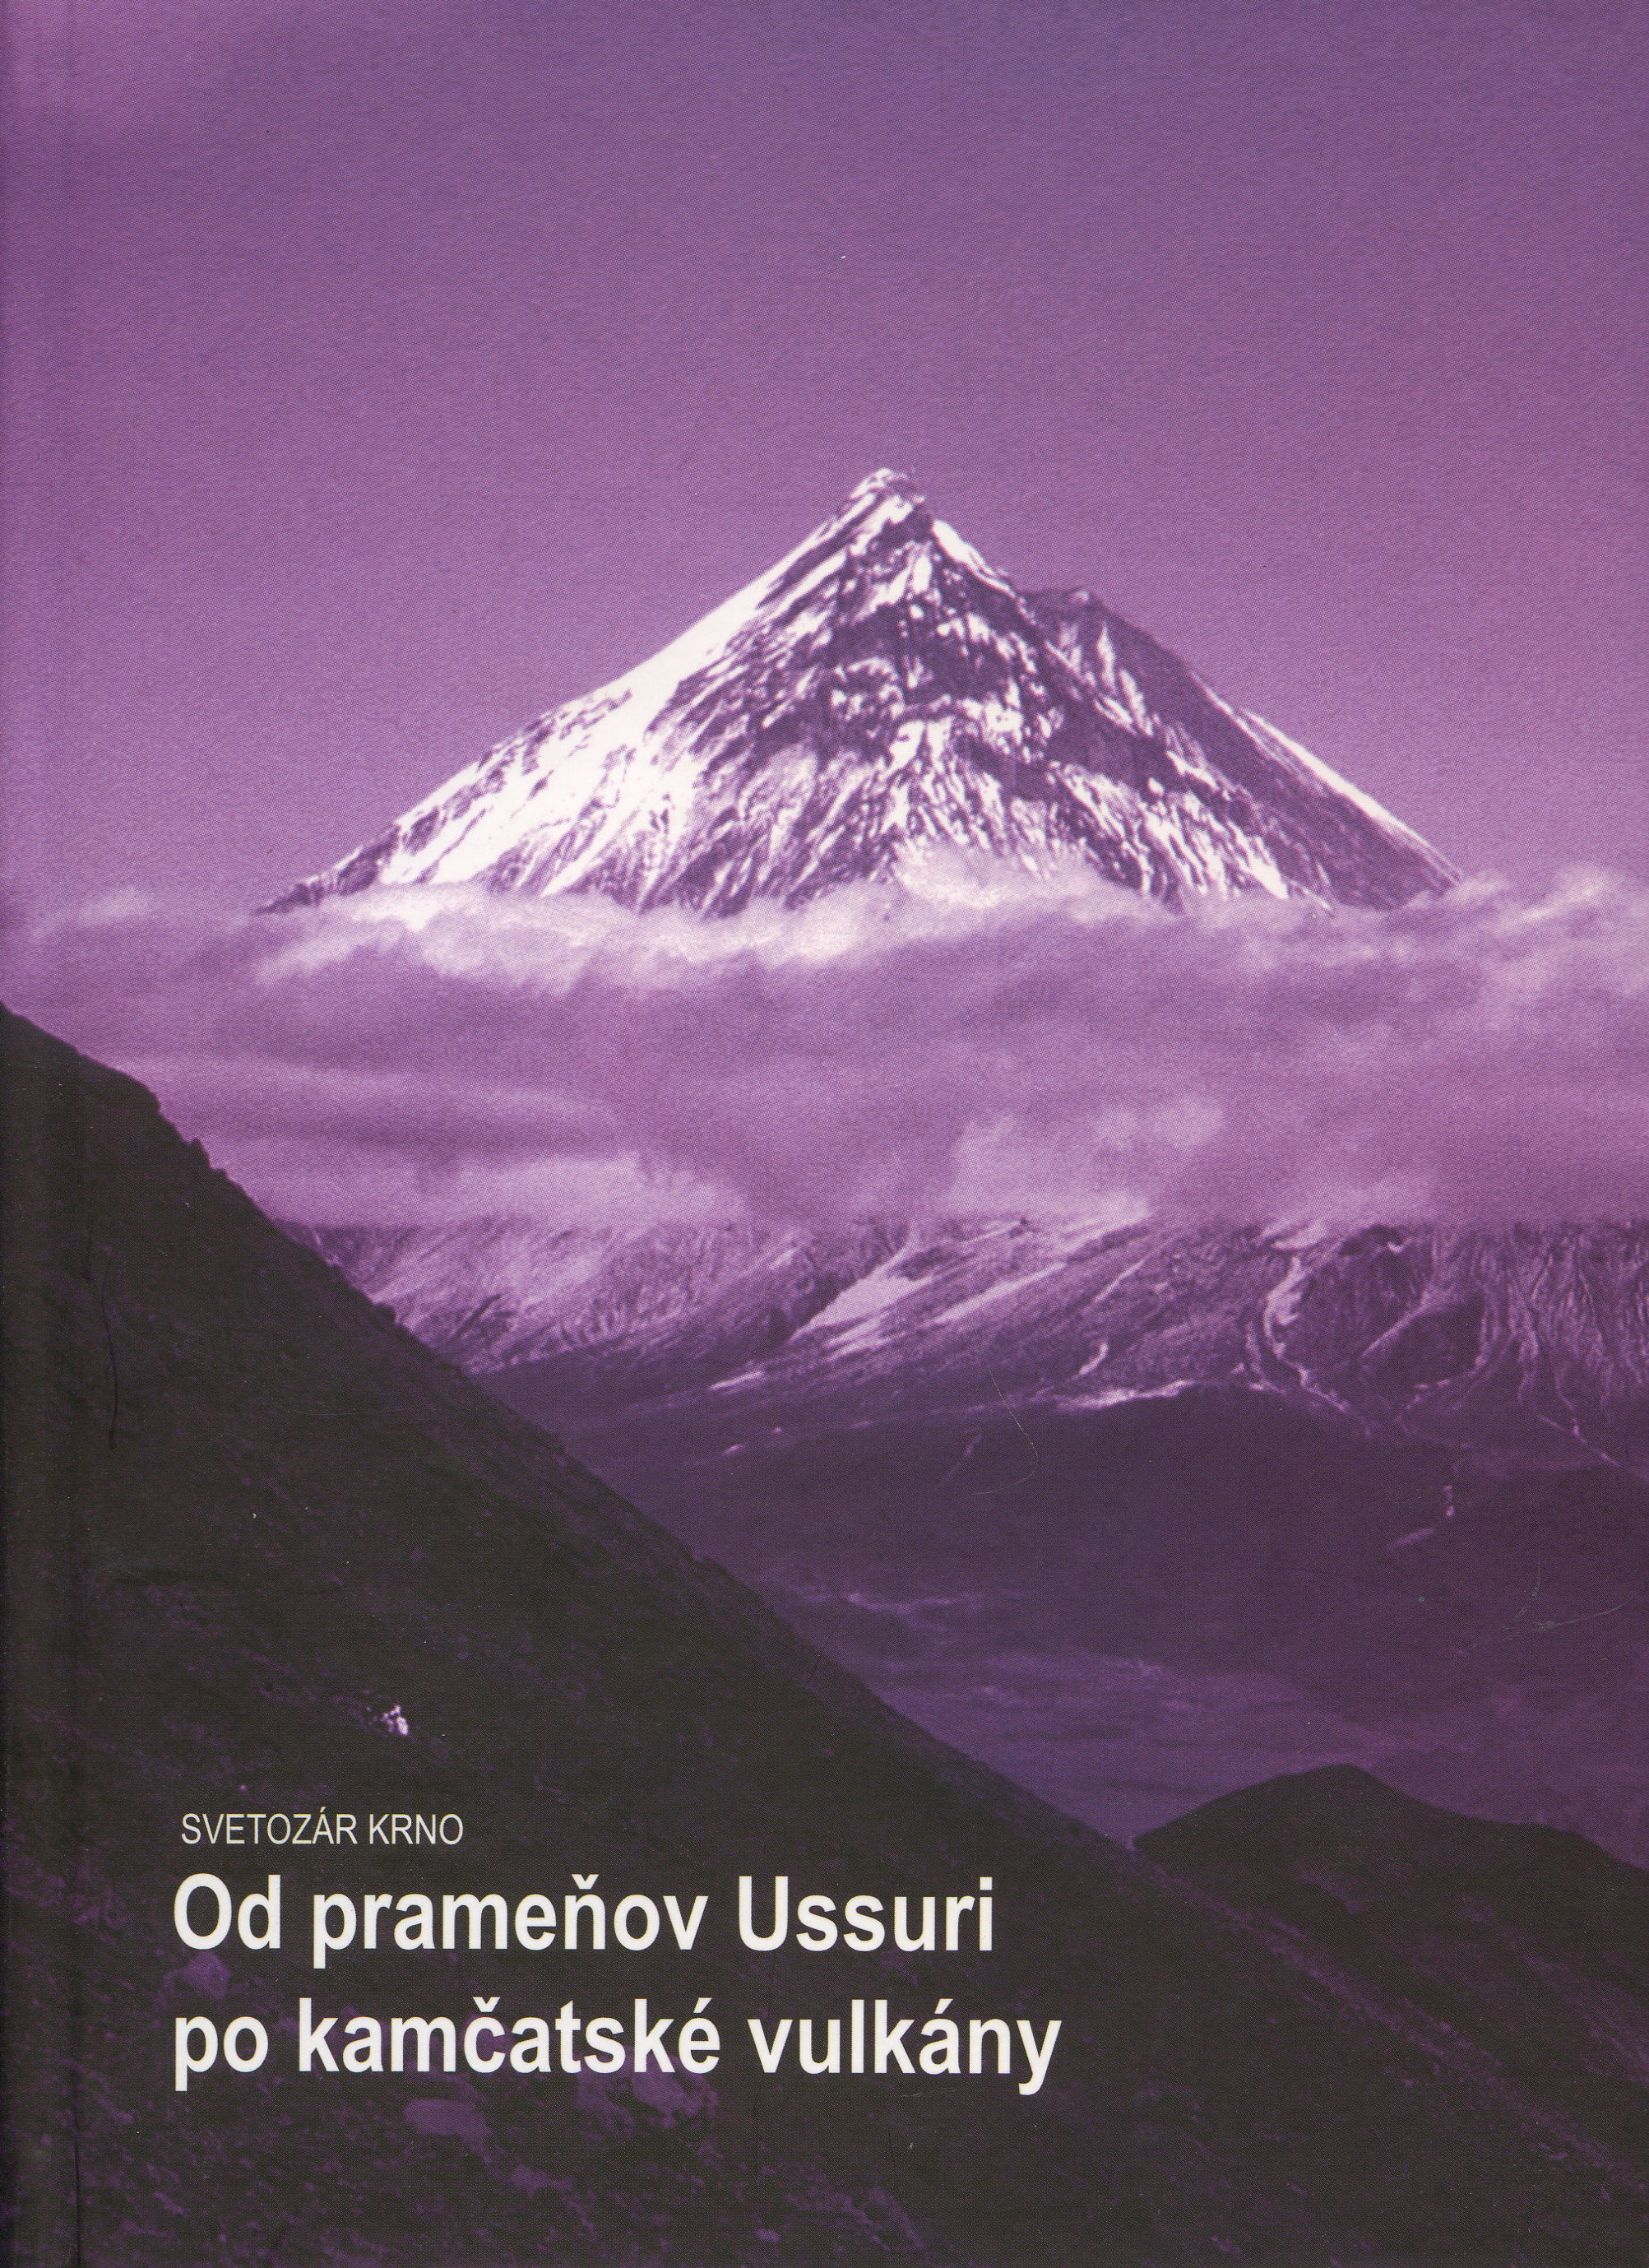 Od prameňov Ussuri po kamčatské vulkány